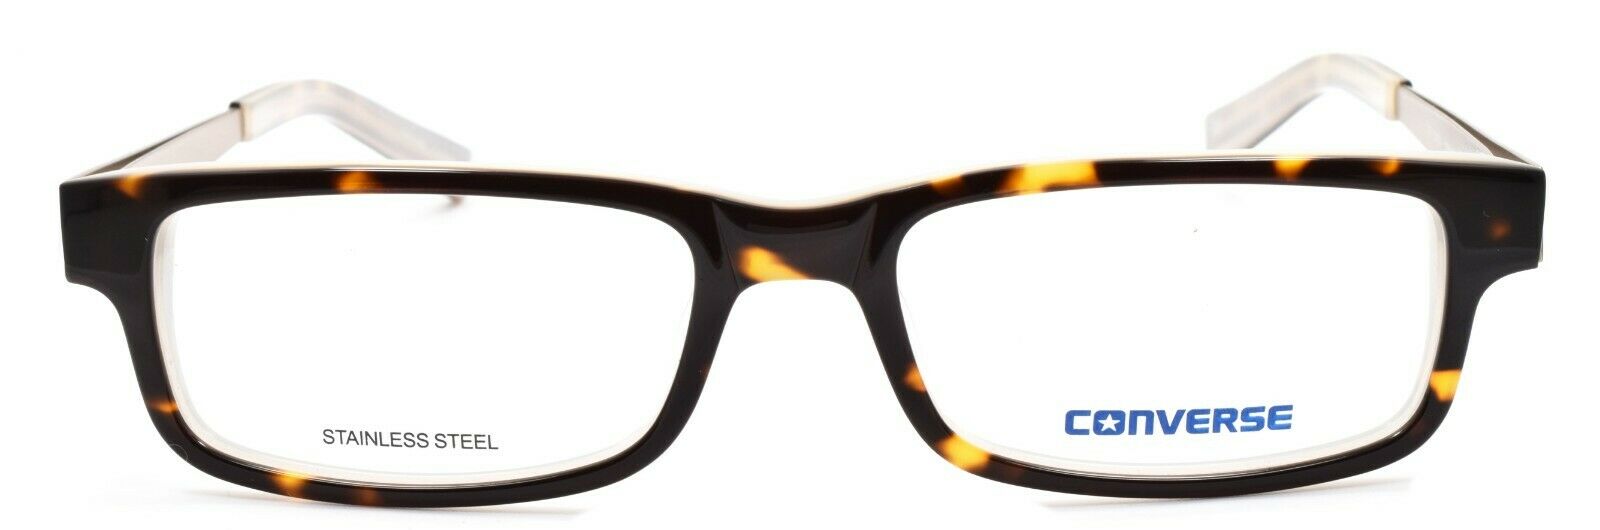 2-CONVERSE City Limits Eyeglasses Frames 51-17-140 Tortoise + CASE-751286218411-IKSpecs